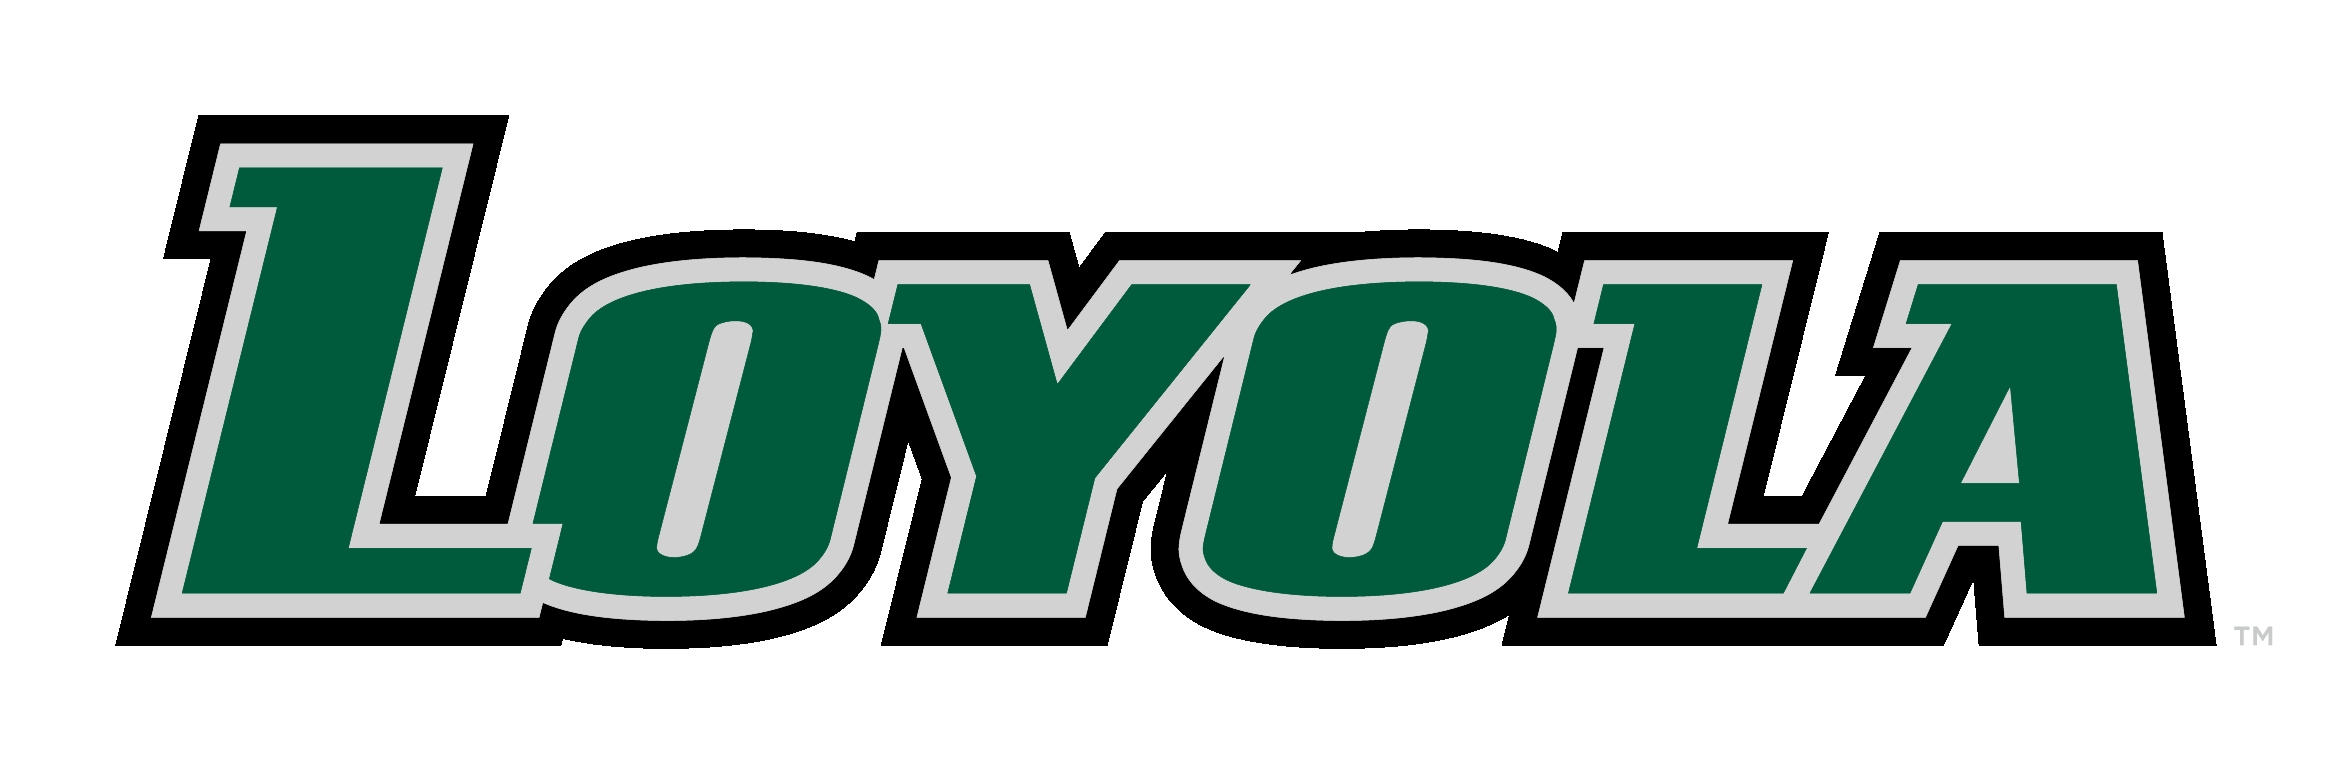 Loyola Logo - Athletic Logos - Loyola University Maryland Athletics